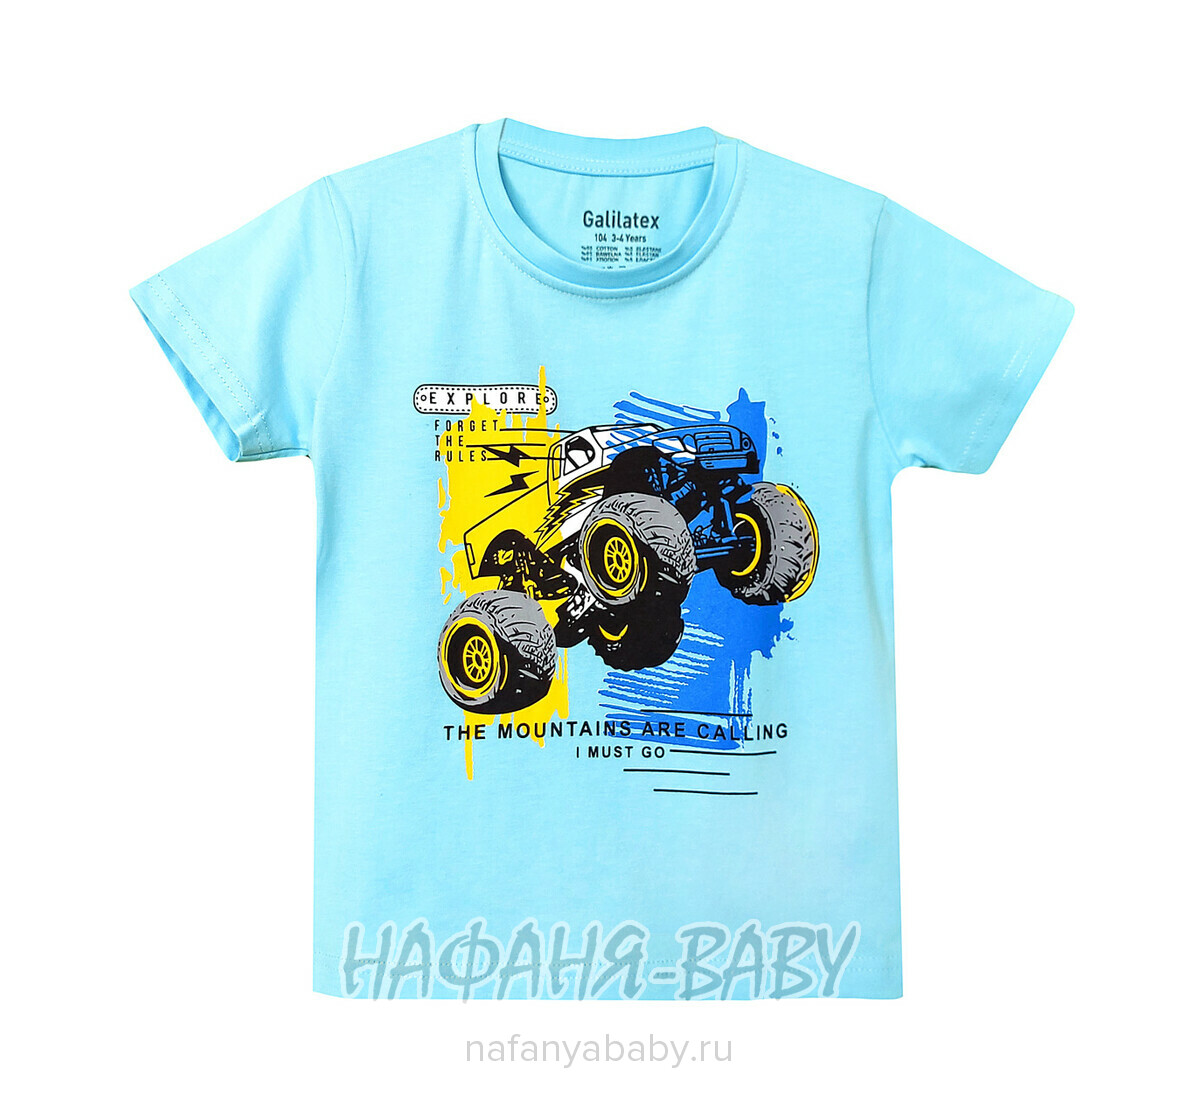 Детская футболка Galilatex арт. 8185, 4-8 лет, цвет голубой, оптом Турция